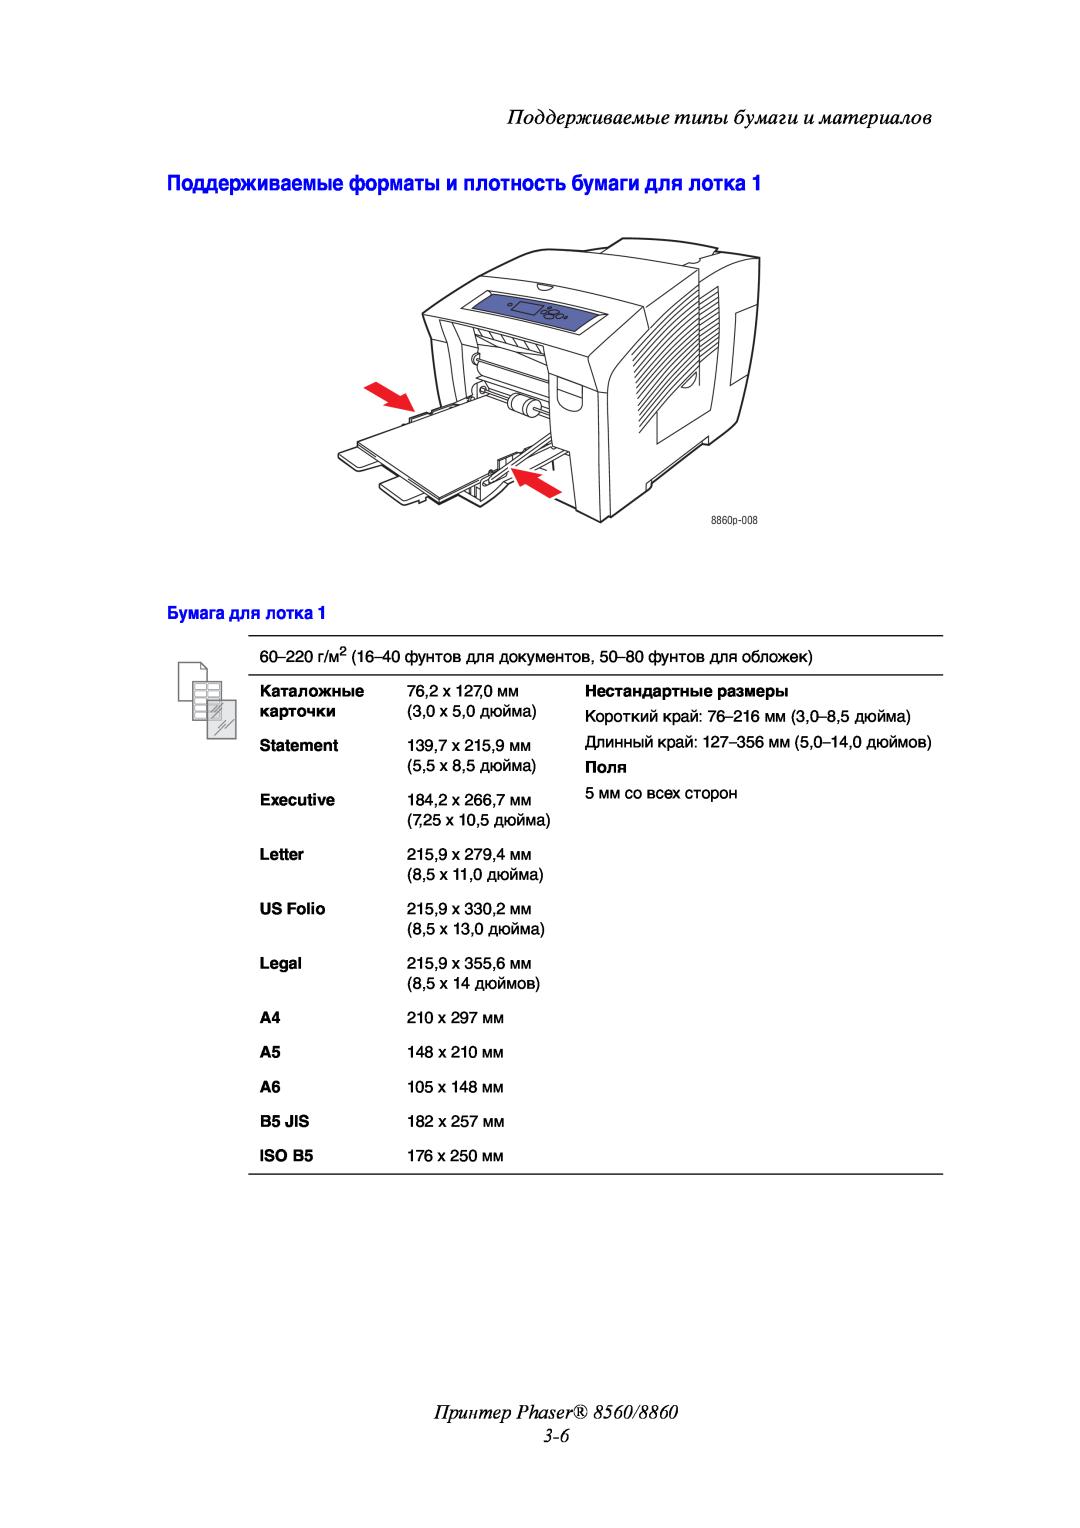 Xerox manual Поддерживаемые форматы и плотность бумаги для лотка, Принтер Phaser 8560/8860 3-6, Бумага для лотка 